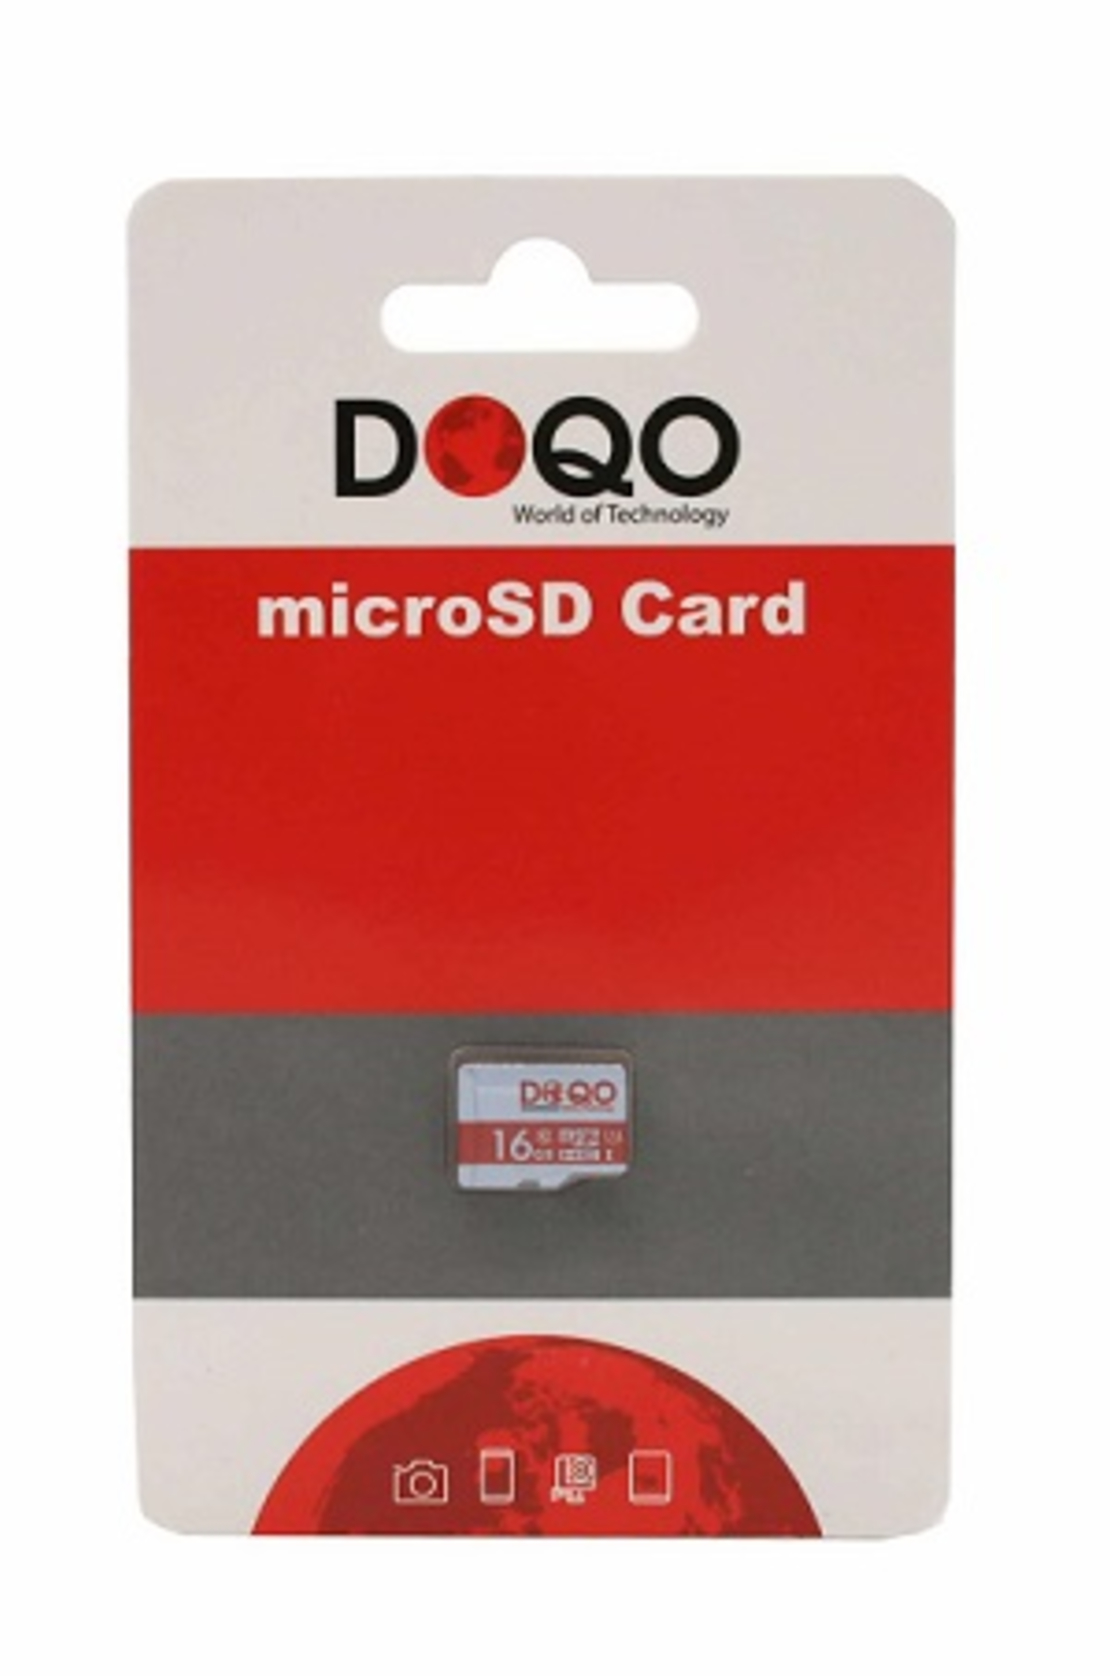 נגן MP3 בלאק מבית דוקו DOQO BLACK 8 GB